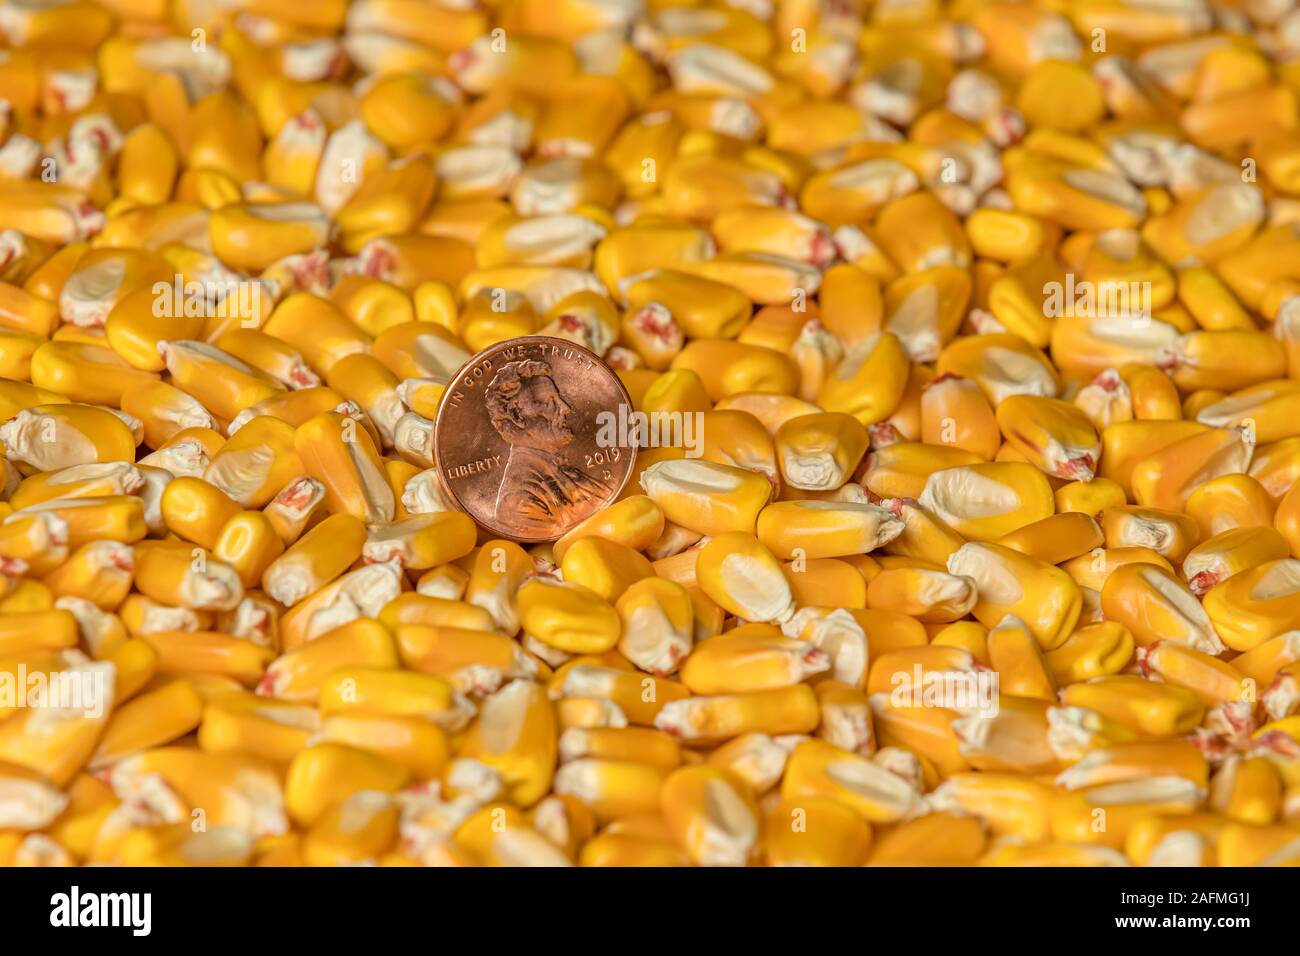 Gros plan du cuivre brillant penny dans un tas de grains de maïs égrené. Concept de prix du marché des produits de base Banque D'Images